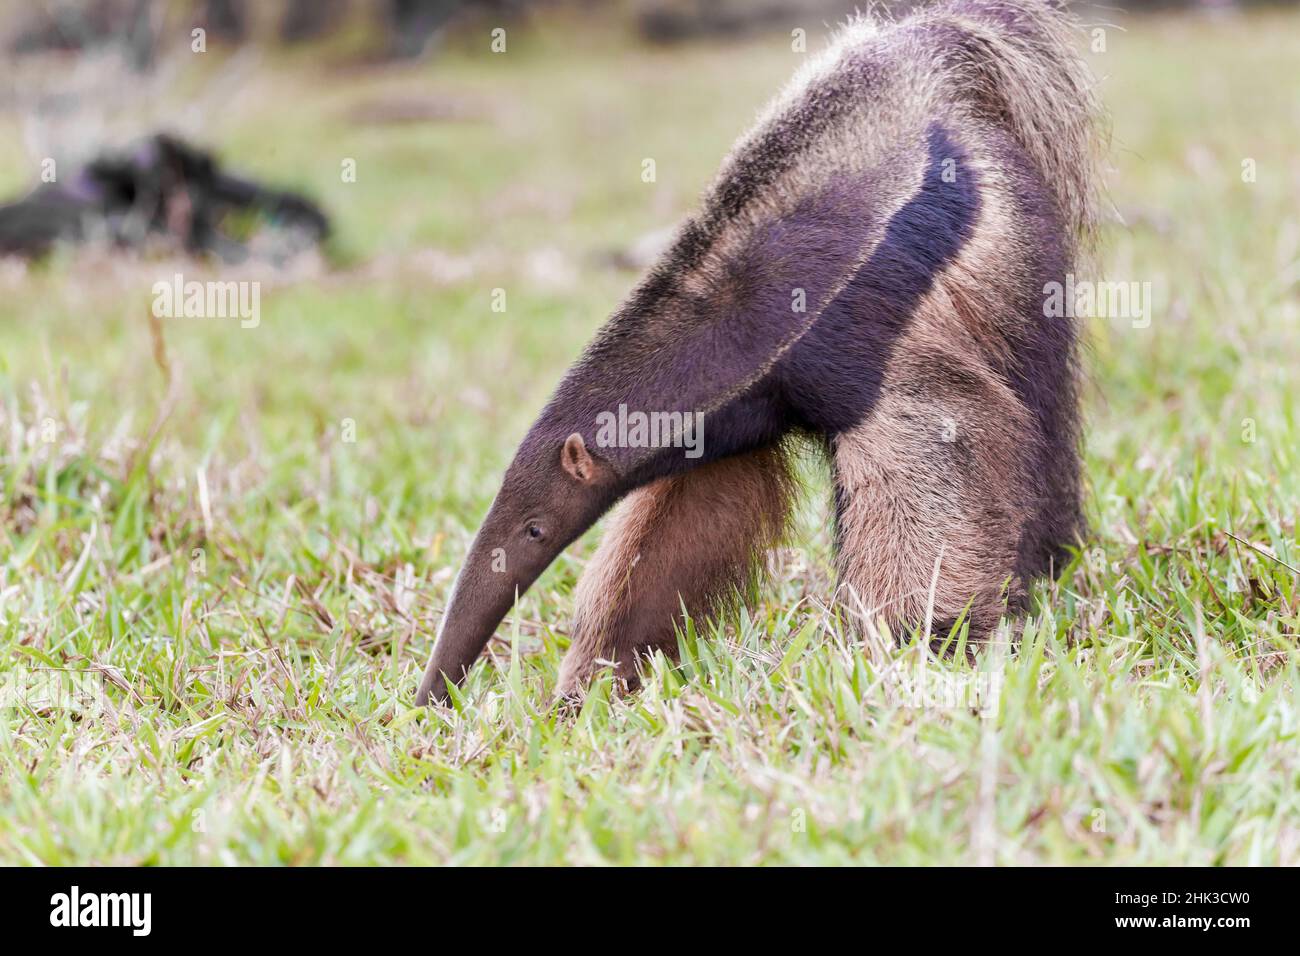 Südamerika, Brasilien, Mato Grosso do Sul, in der Nähe von Bonito, riesigen ameisenbär, Myrmecophaga tridactyl. Giant anteater Essen Ameisen und Termiten in einem offenen fi Stockfoto